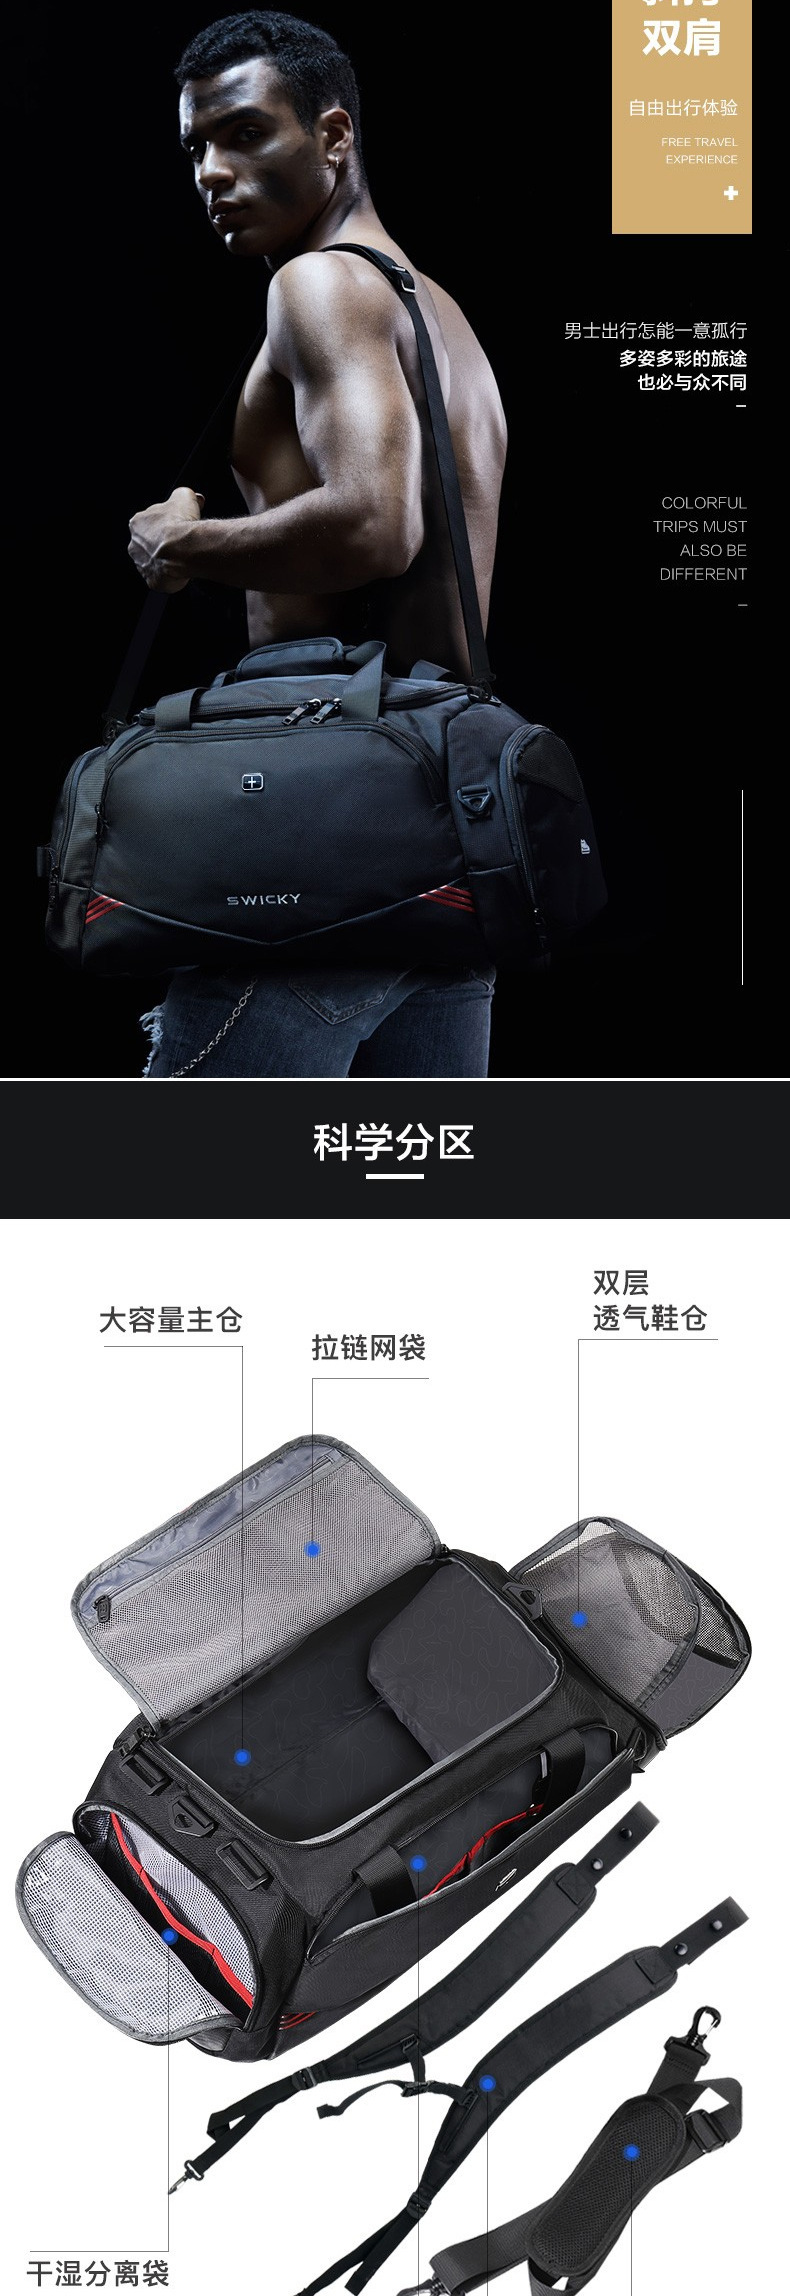 旅行包定制手提包定制行李袋定制